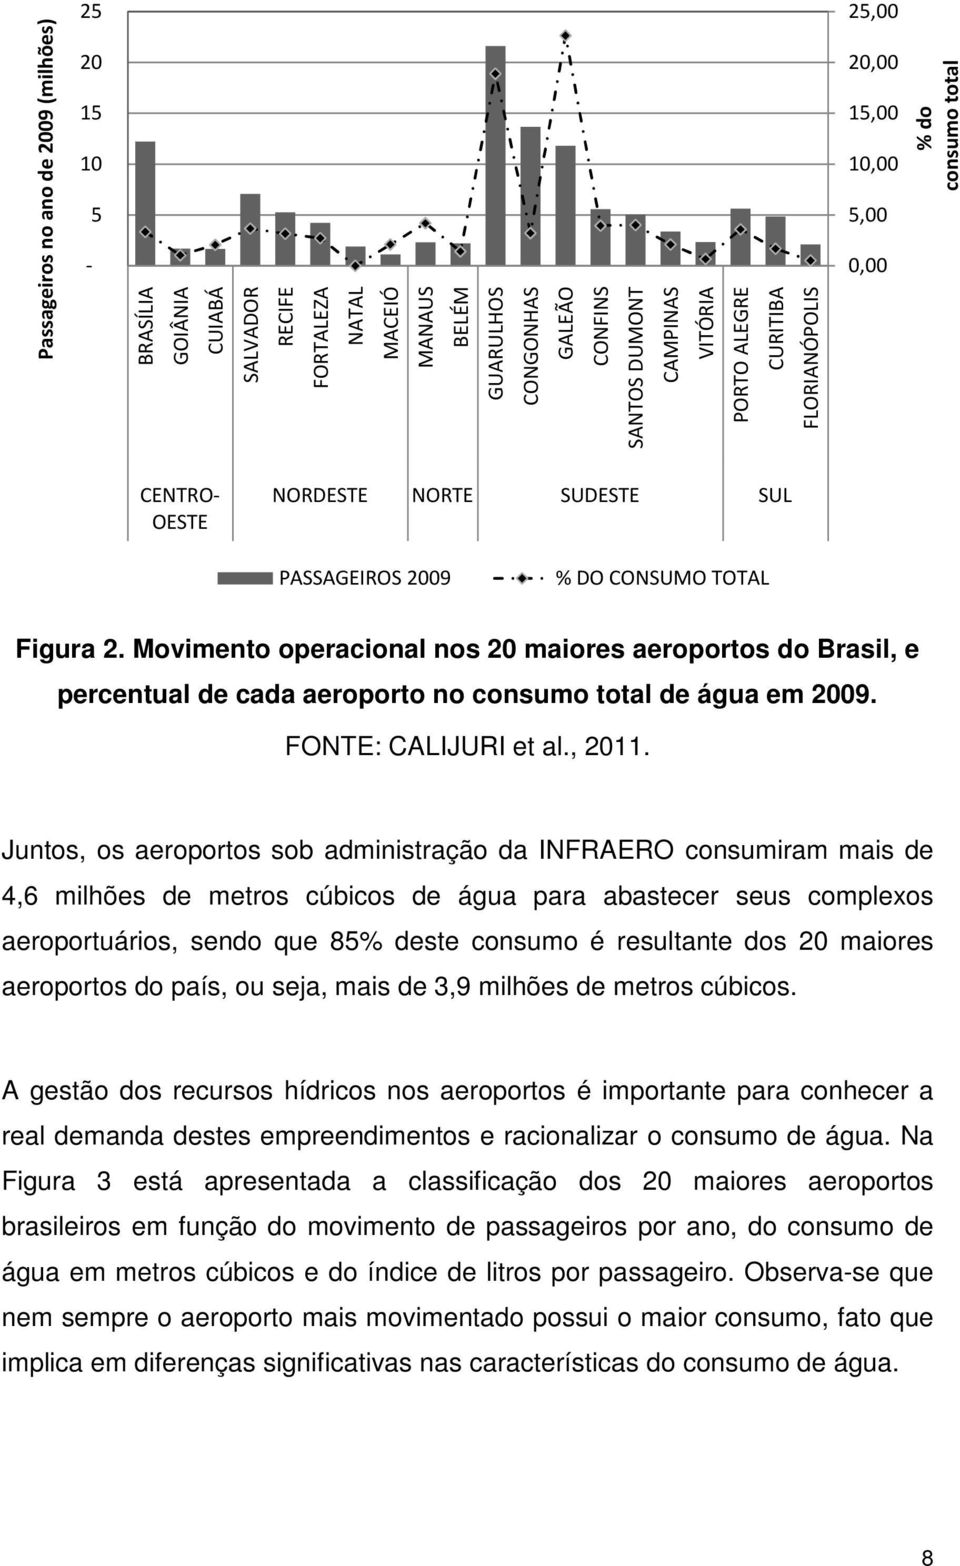 Movimento operacional nos 20 maiores aeroportos do Brasil, e percentual de cada aeroporto no consumo total de água em 2009. FONTE: CALIJURI et al., 2011.